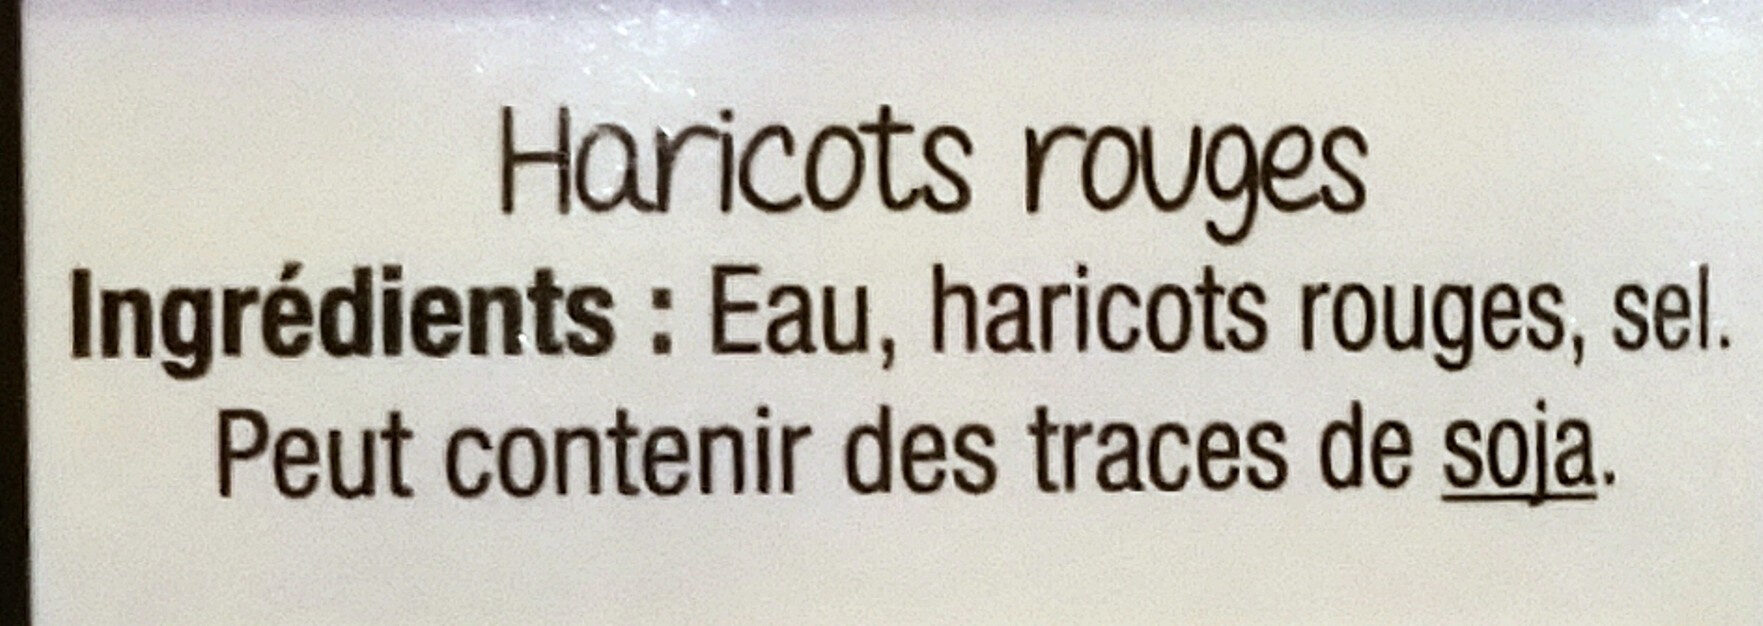 500g HARICOTS ROUGES - Ingredienser - fr